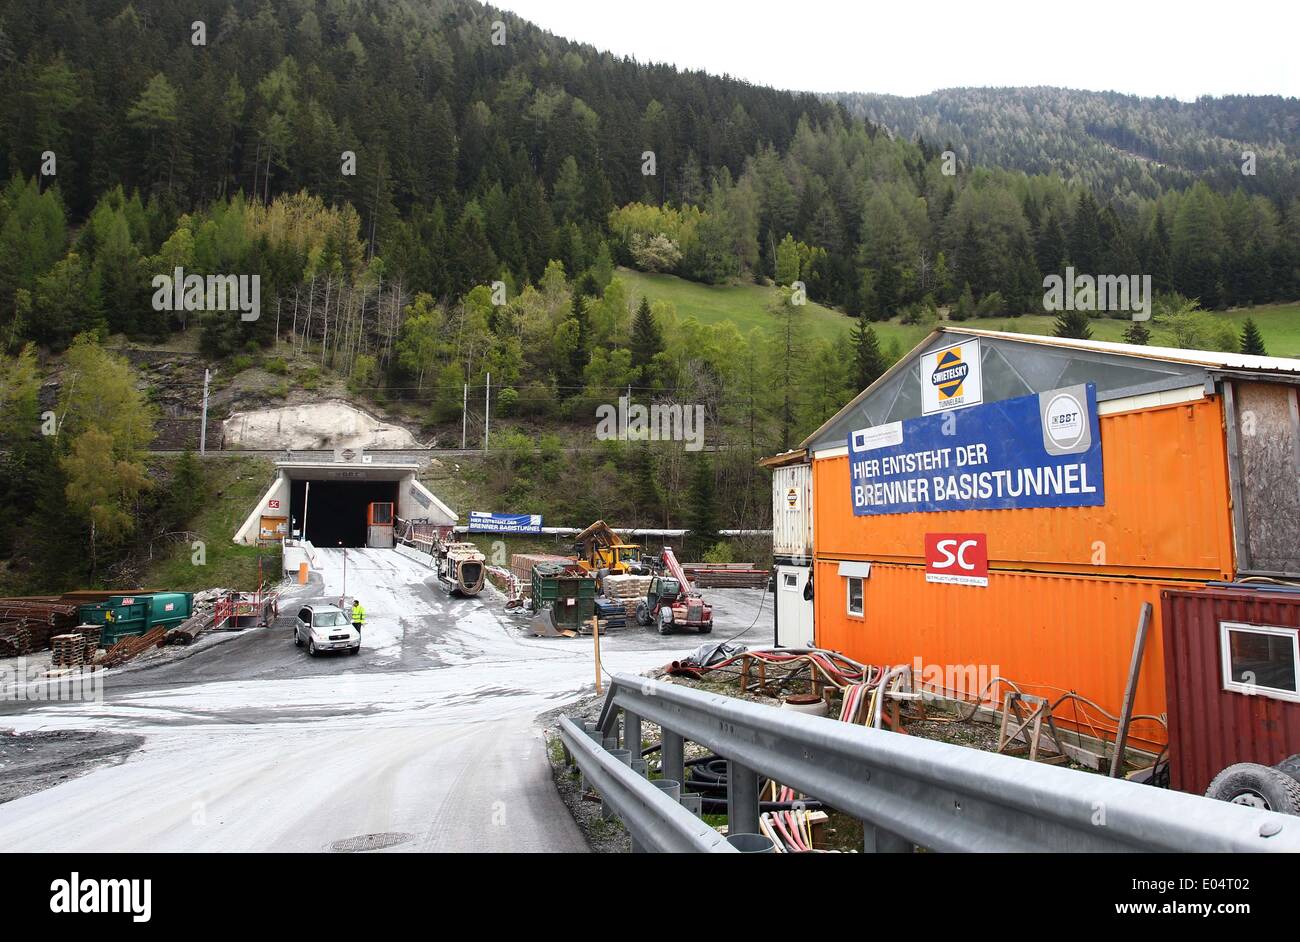 Der Eingang zum Zugangsstollen zum Brenner Basistunnel aufgenommen am 02.05.2014 bei Steinach (Österreich). Vertreter aus Politik und Medien informierten sich vor Ort über das Projekt, welches derzeit das größte geplante grenzüberschreitende Verkehrsprojekt zwischen Österreich und Italien ist und auch erhebliche Auswirkungen auf den Schienen- und Lastverkehr in Deutschland haben wird. Foto: Karl-Josef Hildenbrand/dpa +++(c) dpa - Bildfunk+++ Stock Photo